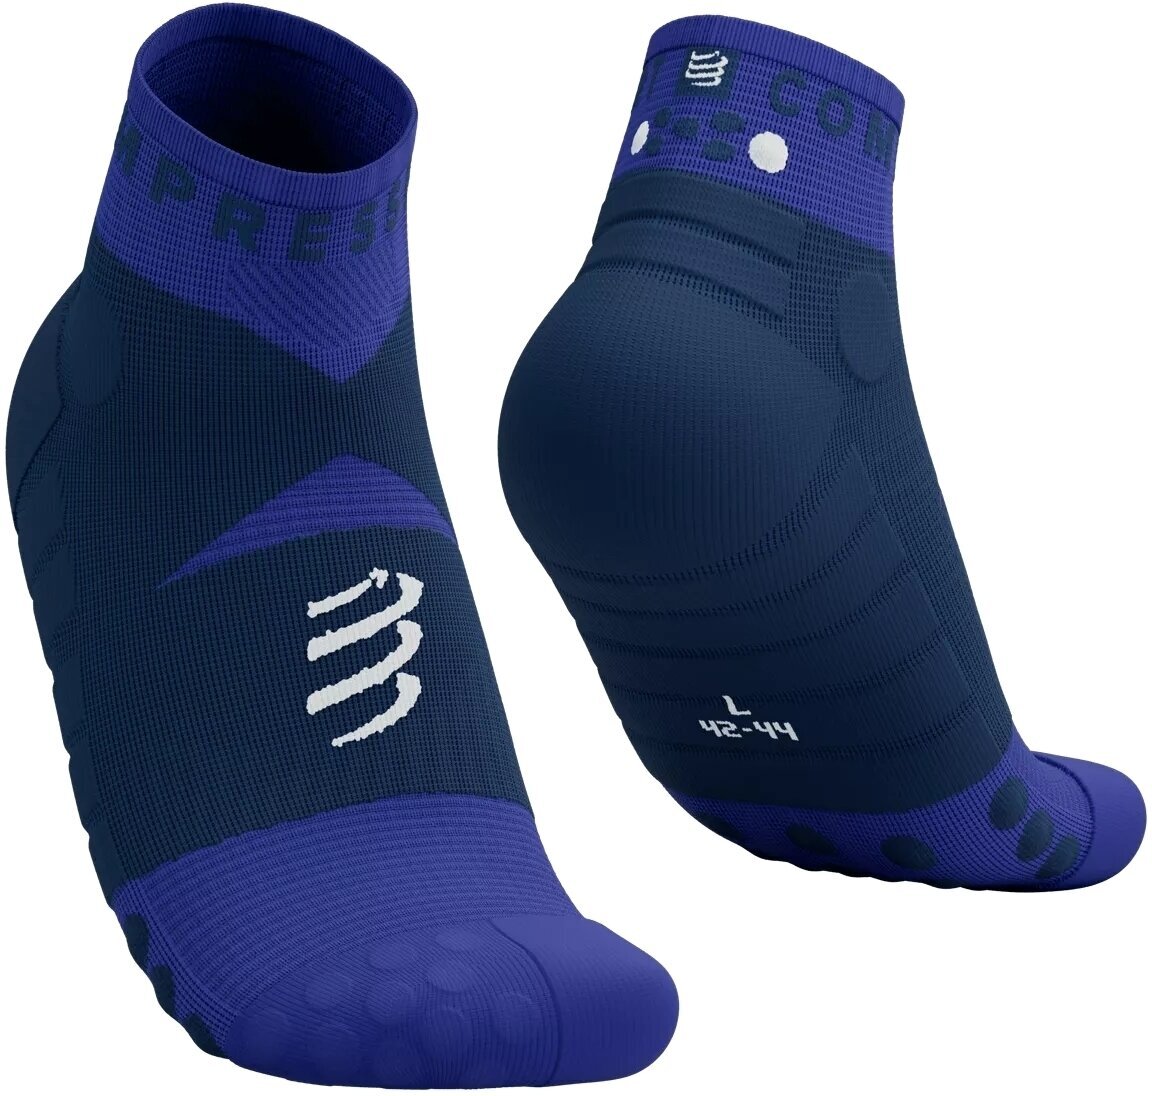 Běžecké ponožky
 Compressport Ultra Trail Low Socks Dazzling Blue/Dress Blues/White T1 Běžecké ponožky